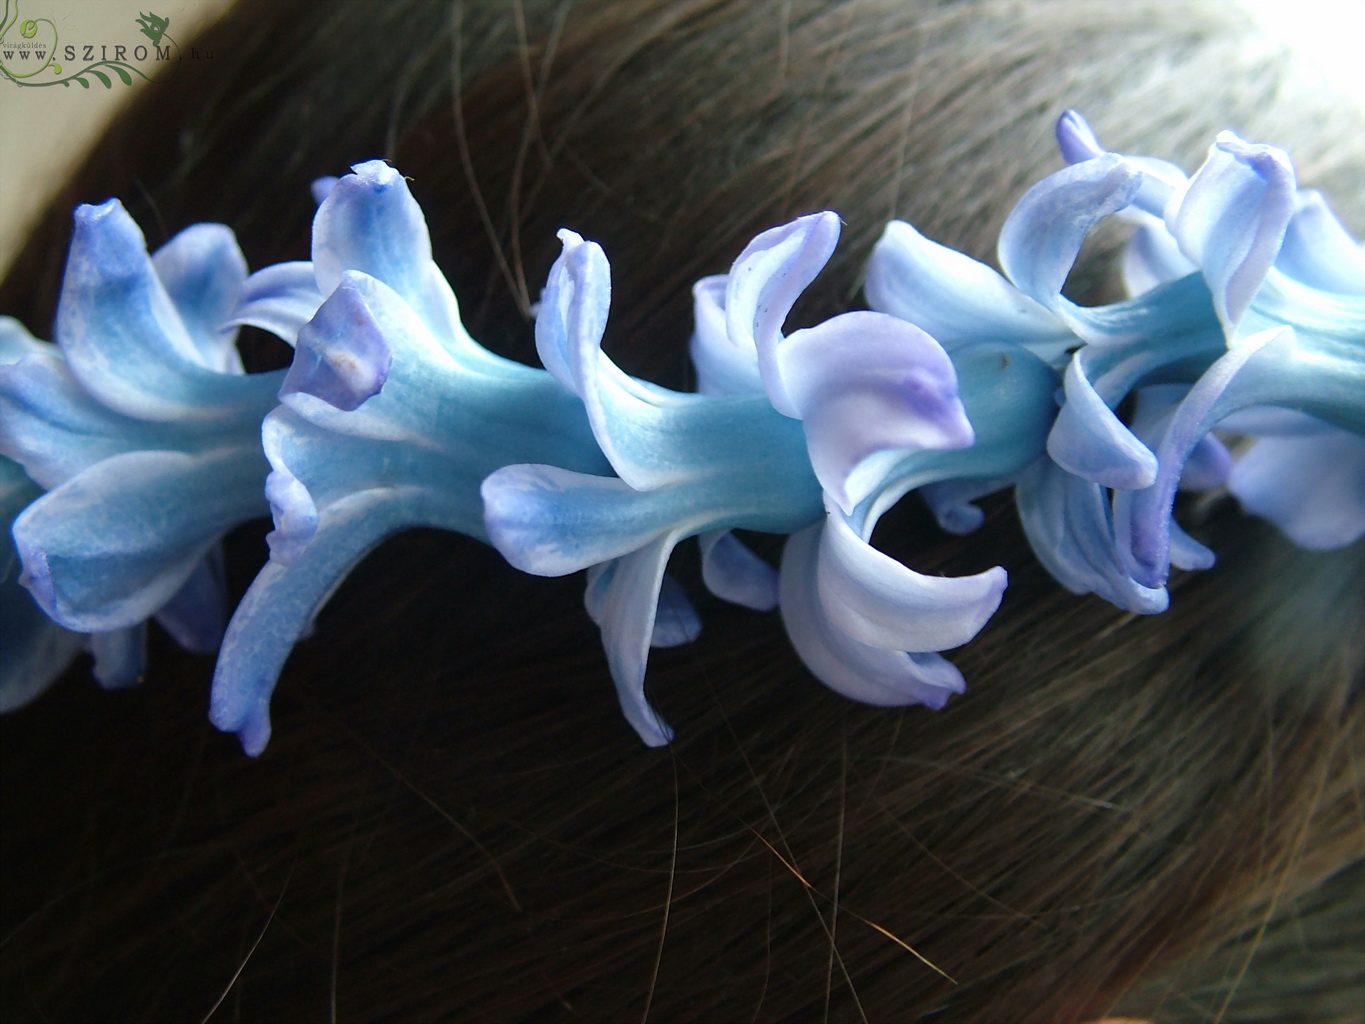 Virágküldés Budapest - haj koszorú jácintból (kék)